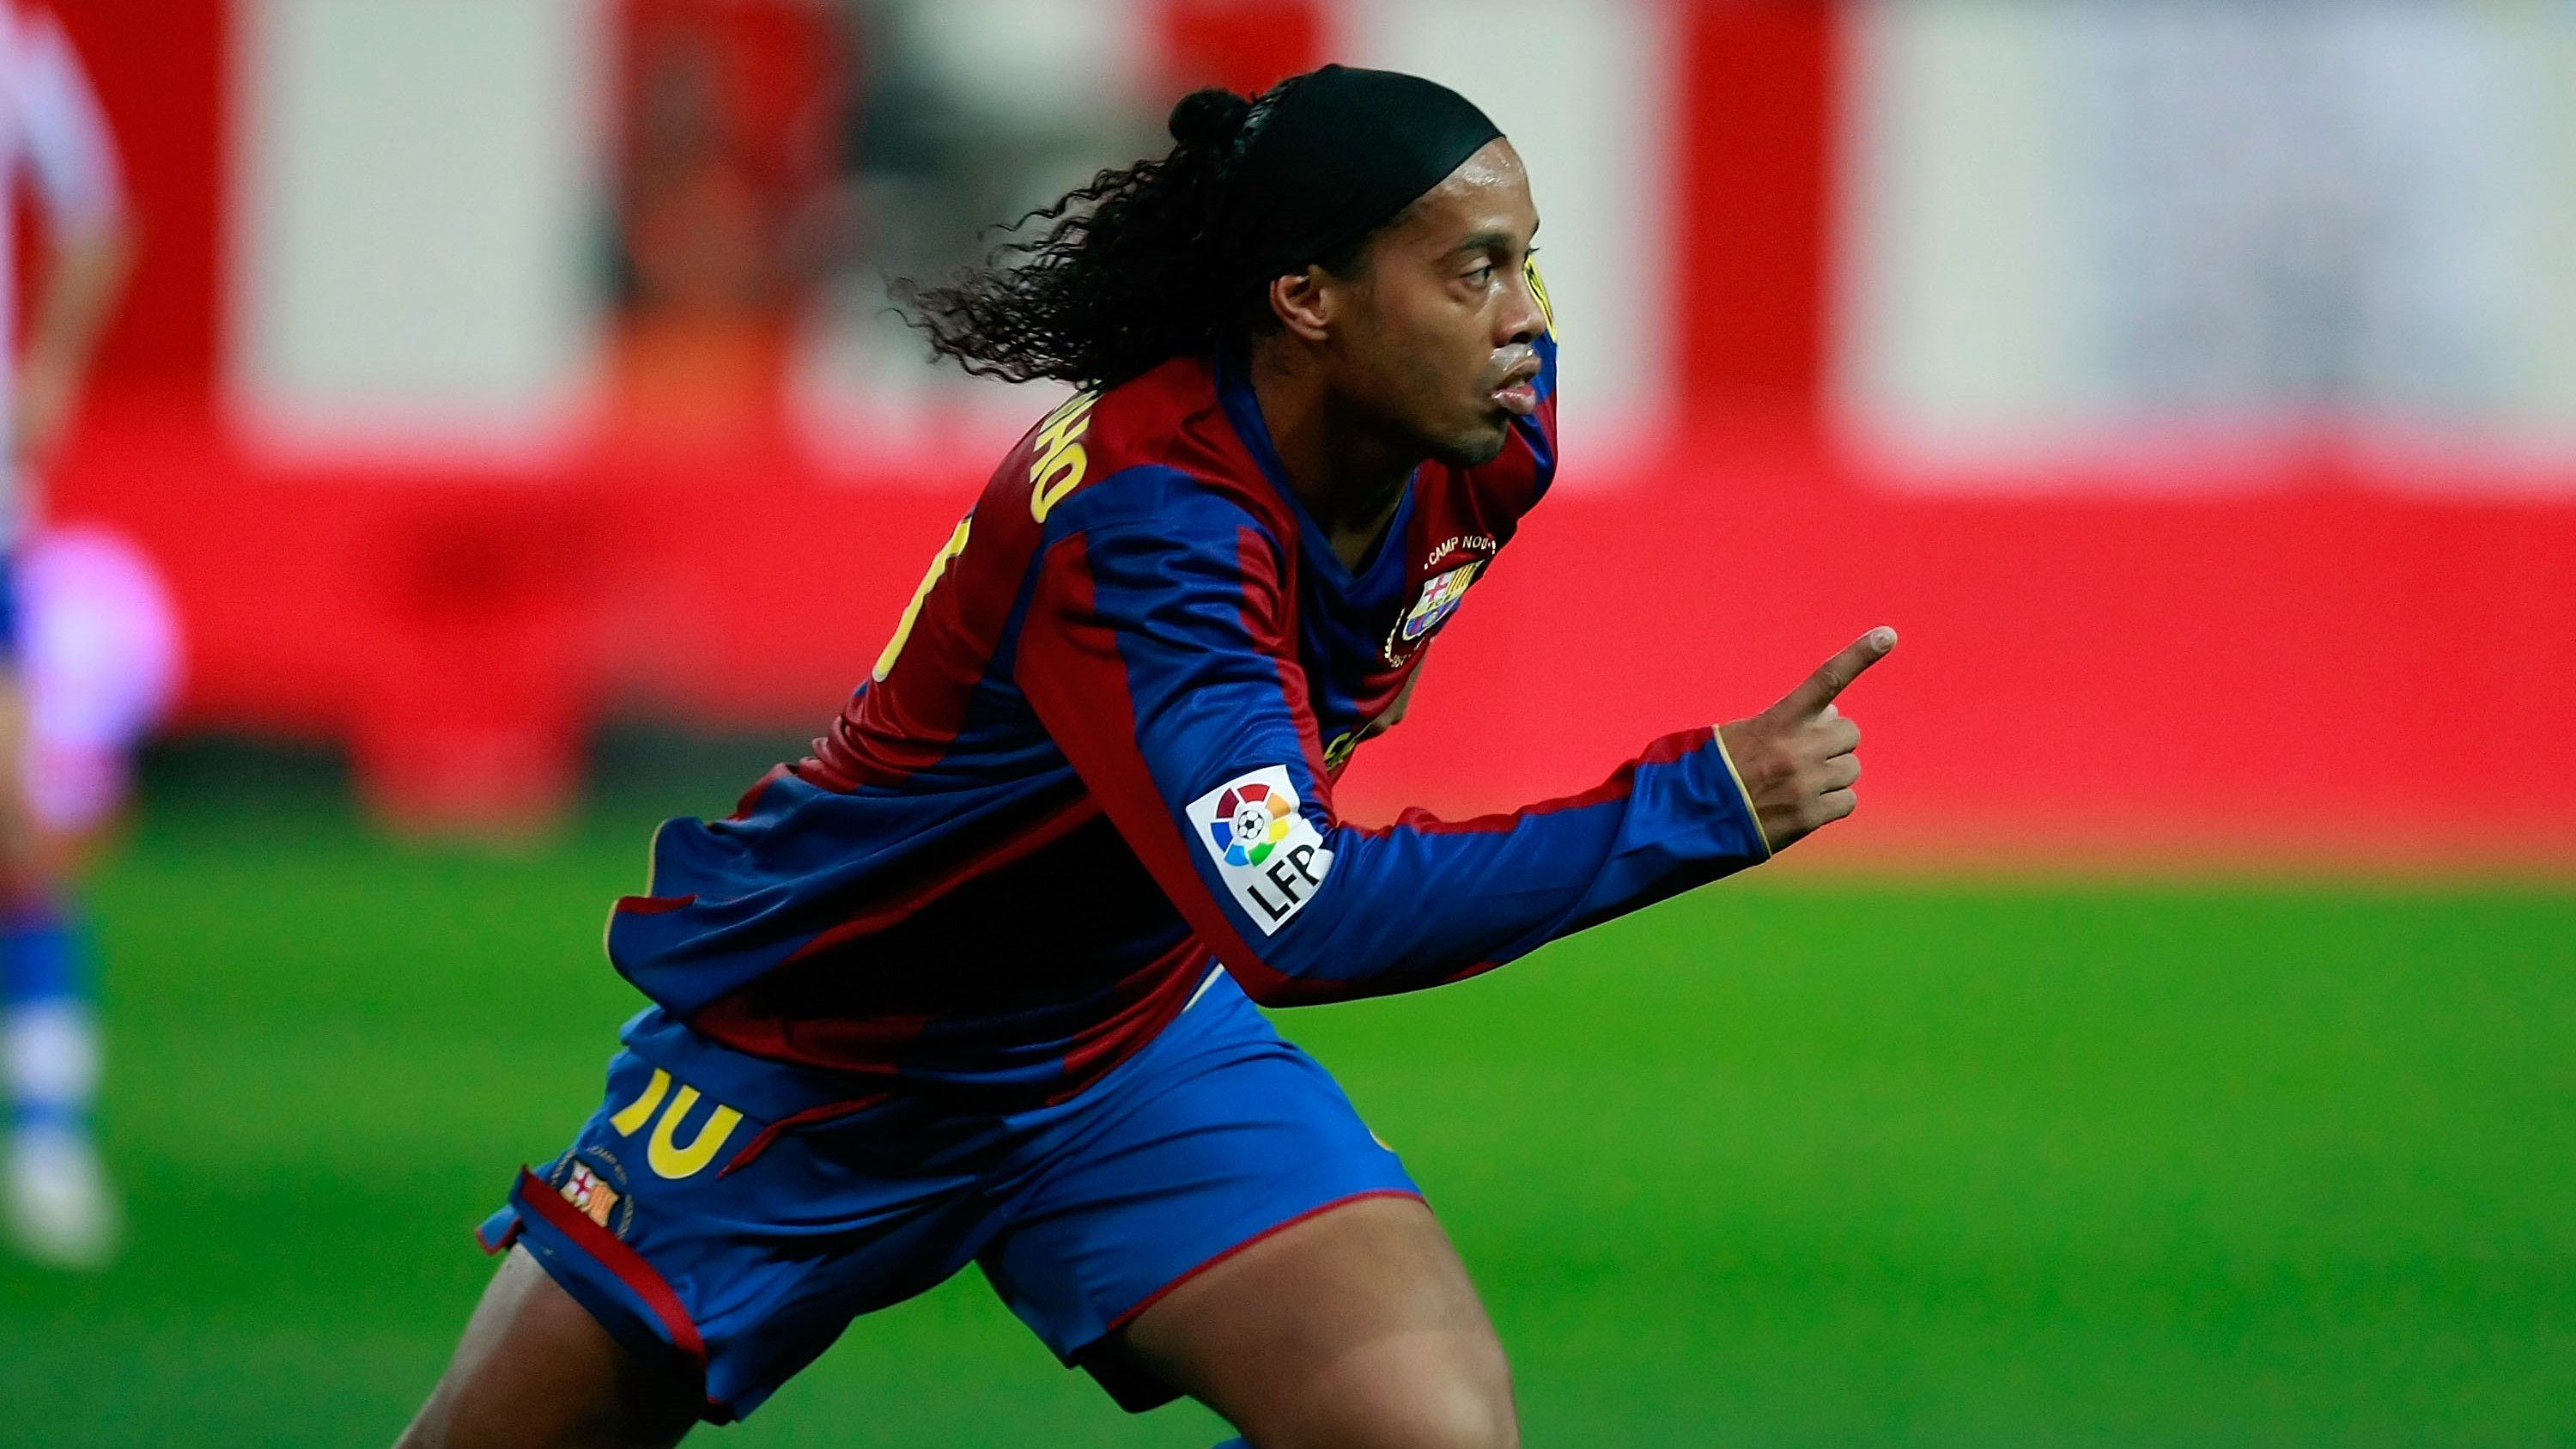 Ronaldinho mérlege a Barcelona játékosaként: 207 mérkőzésen 94 gól és 70 gólpassz (Fotó: Getty Images)